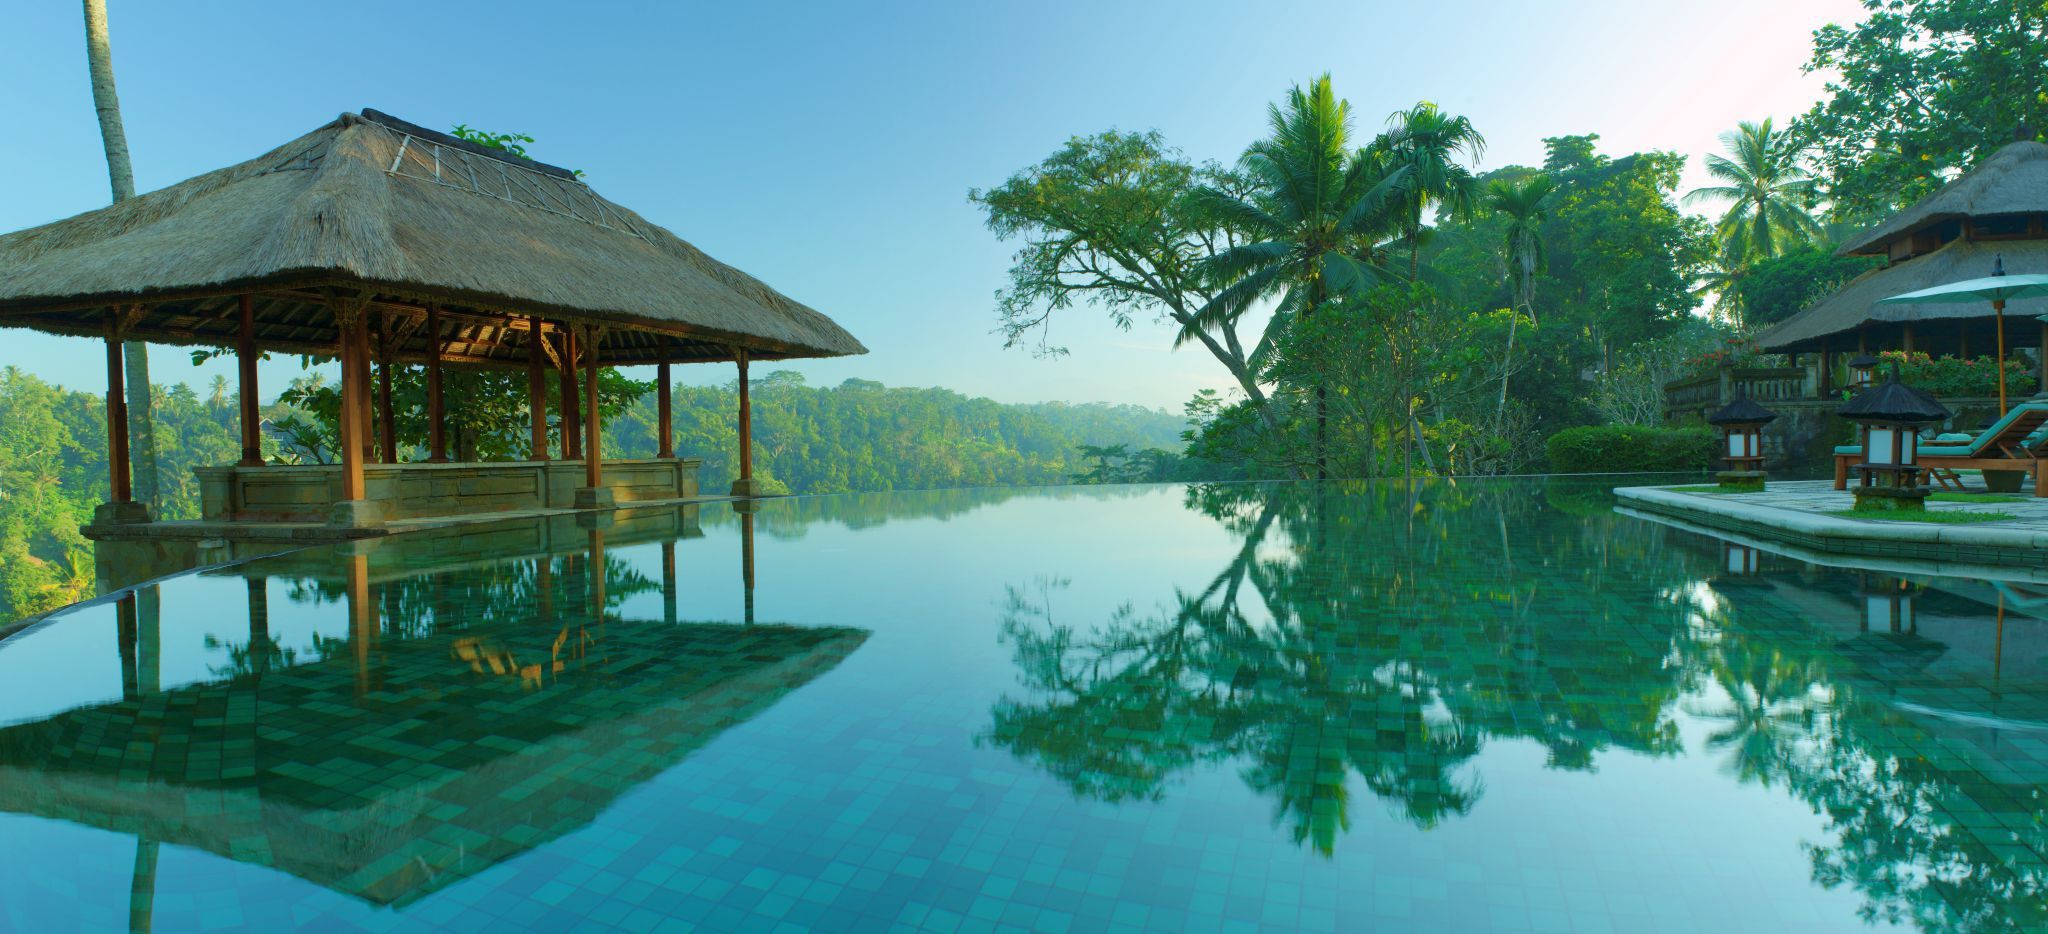 Der Pool des Hotels Amandari, mit Pagode und Dschungel im Hintergrund